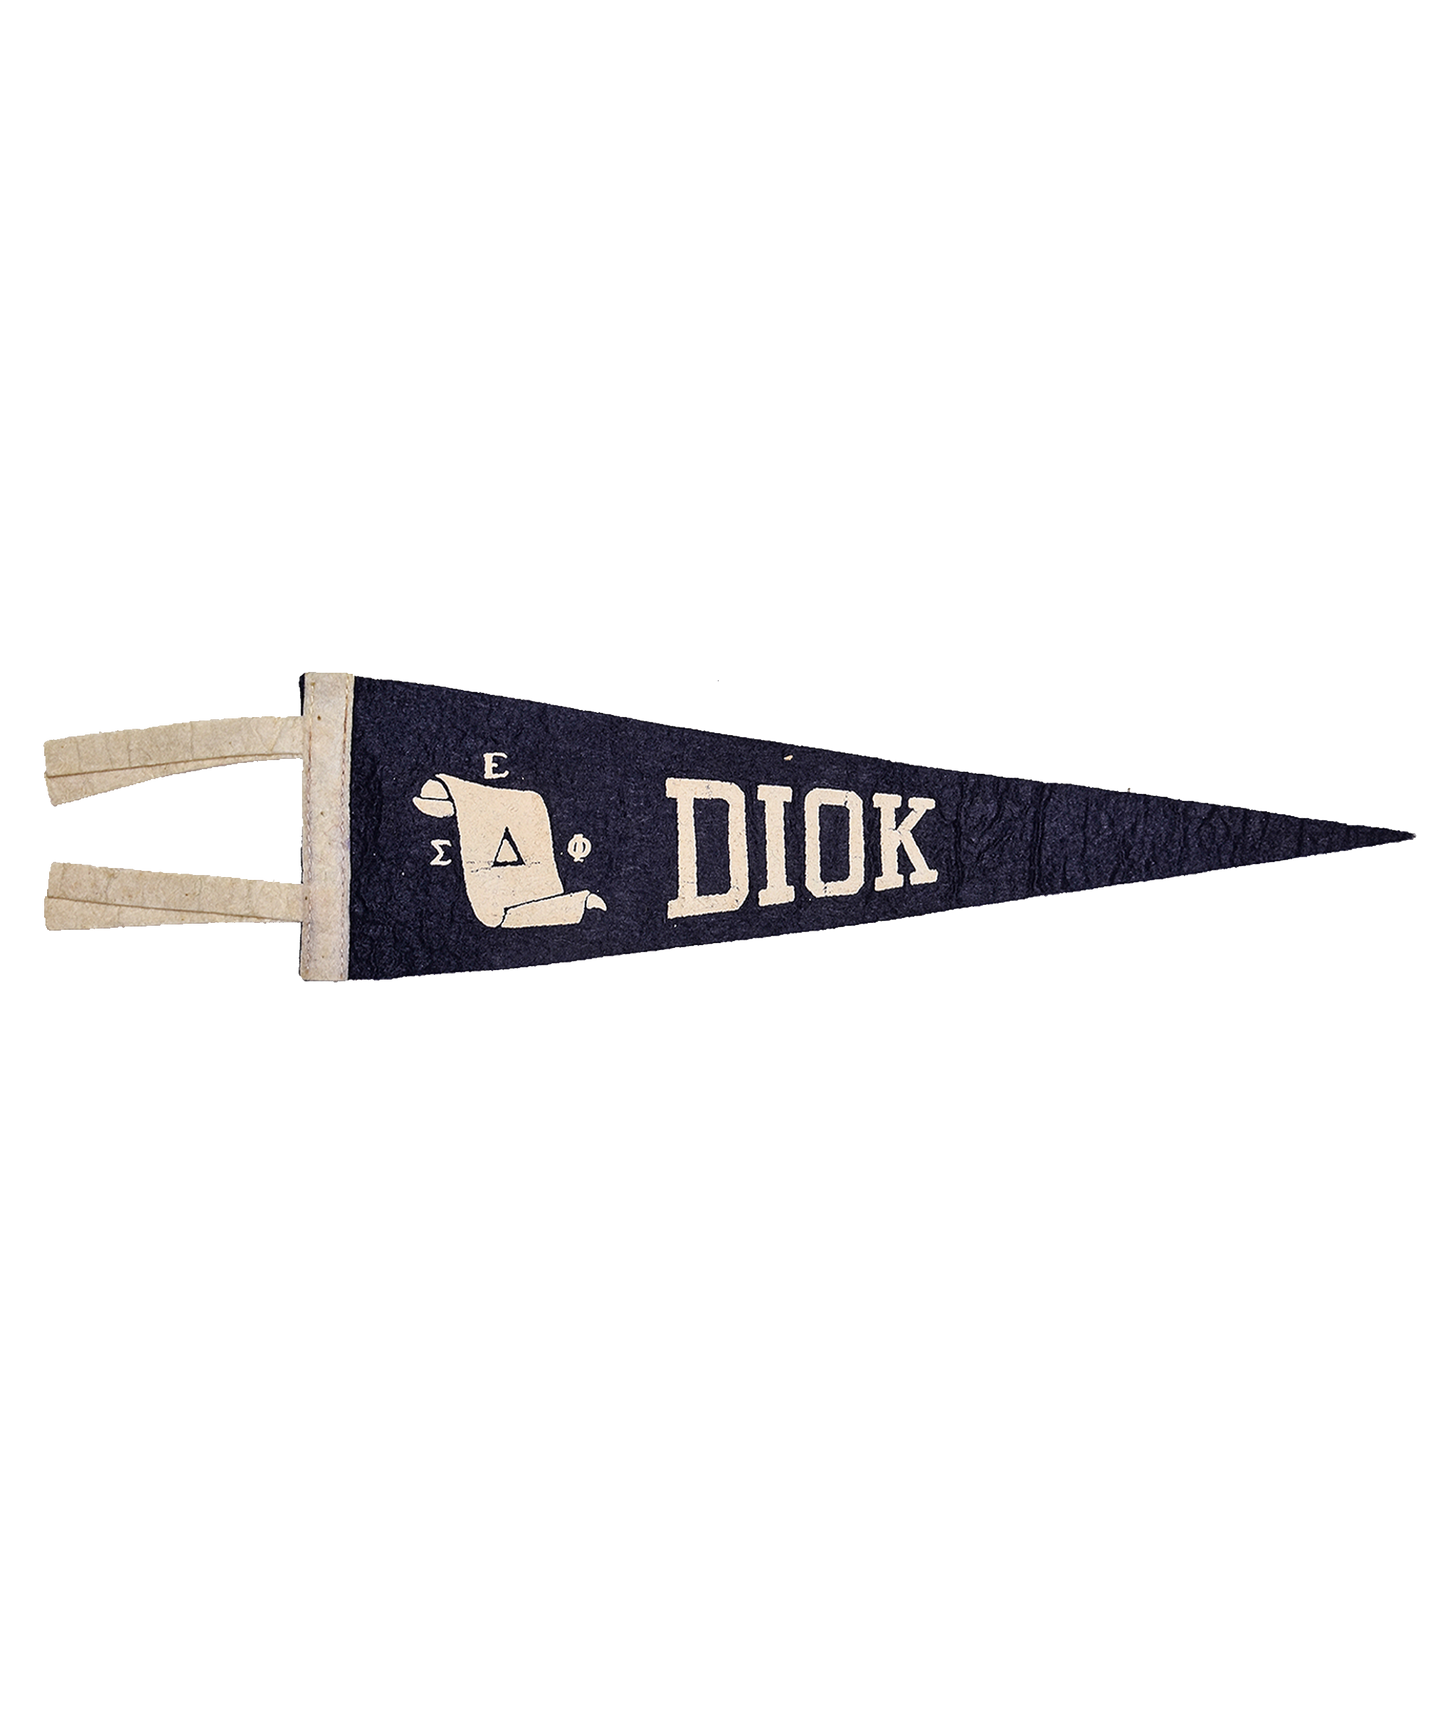 Vintage Pennant- Diok